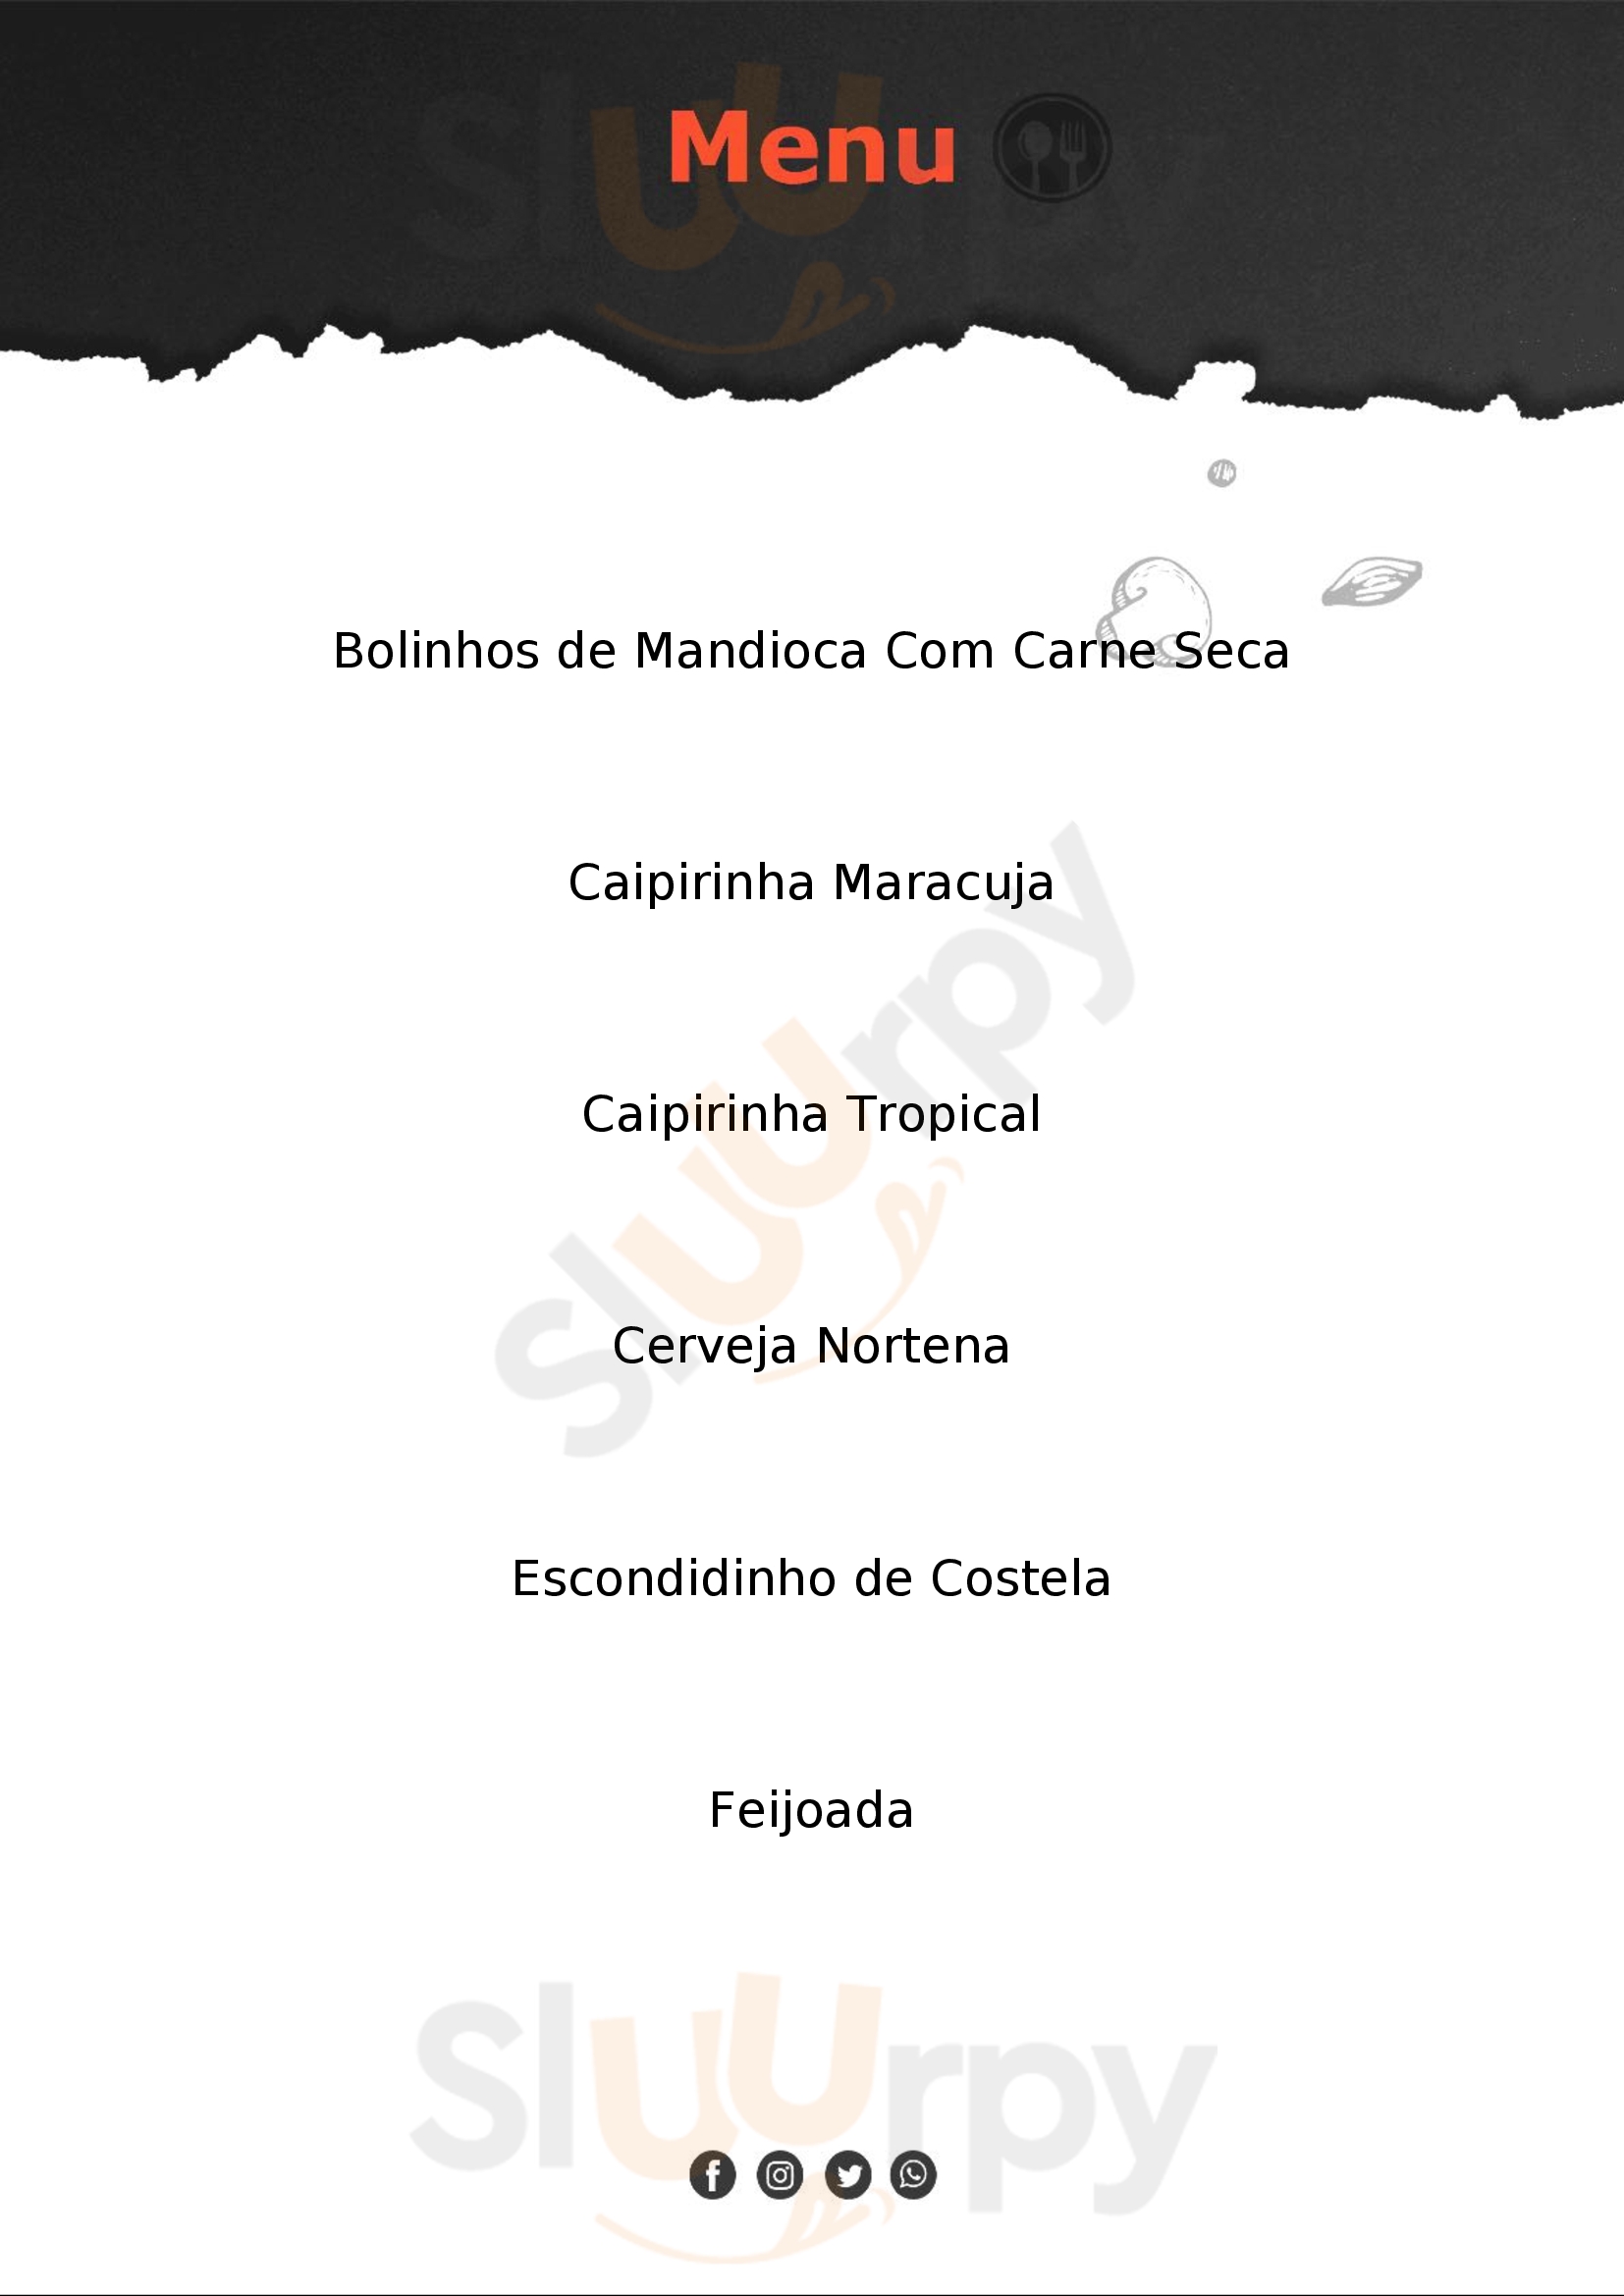 Lanchonete & Restaurante - Serafim São Paulo Menu - 1